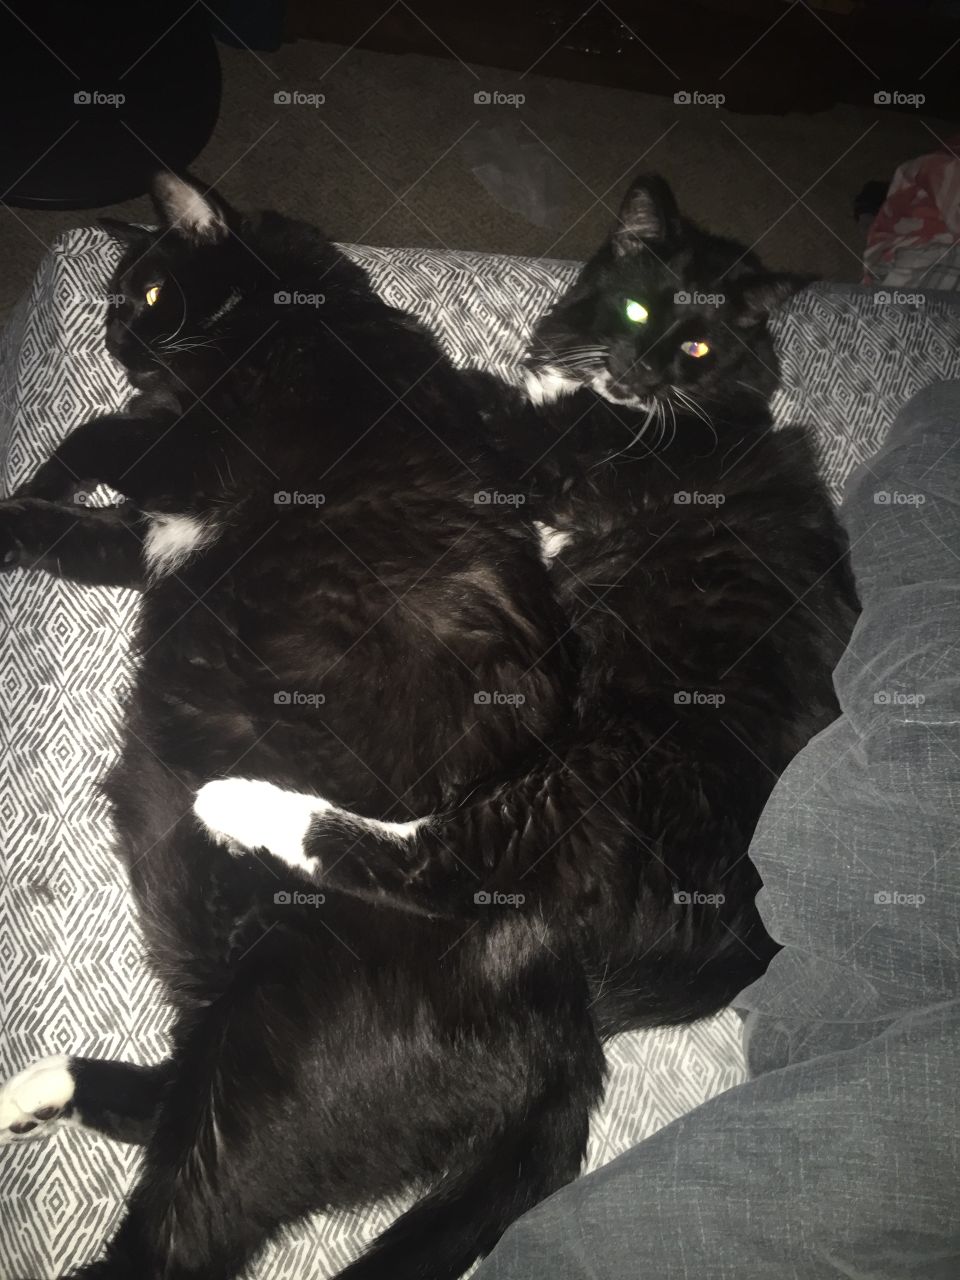 Fat cats